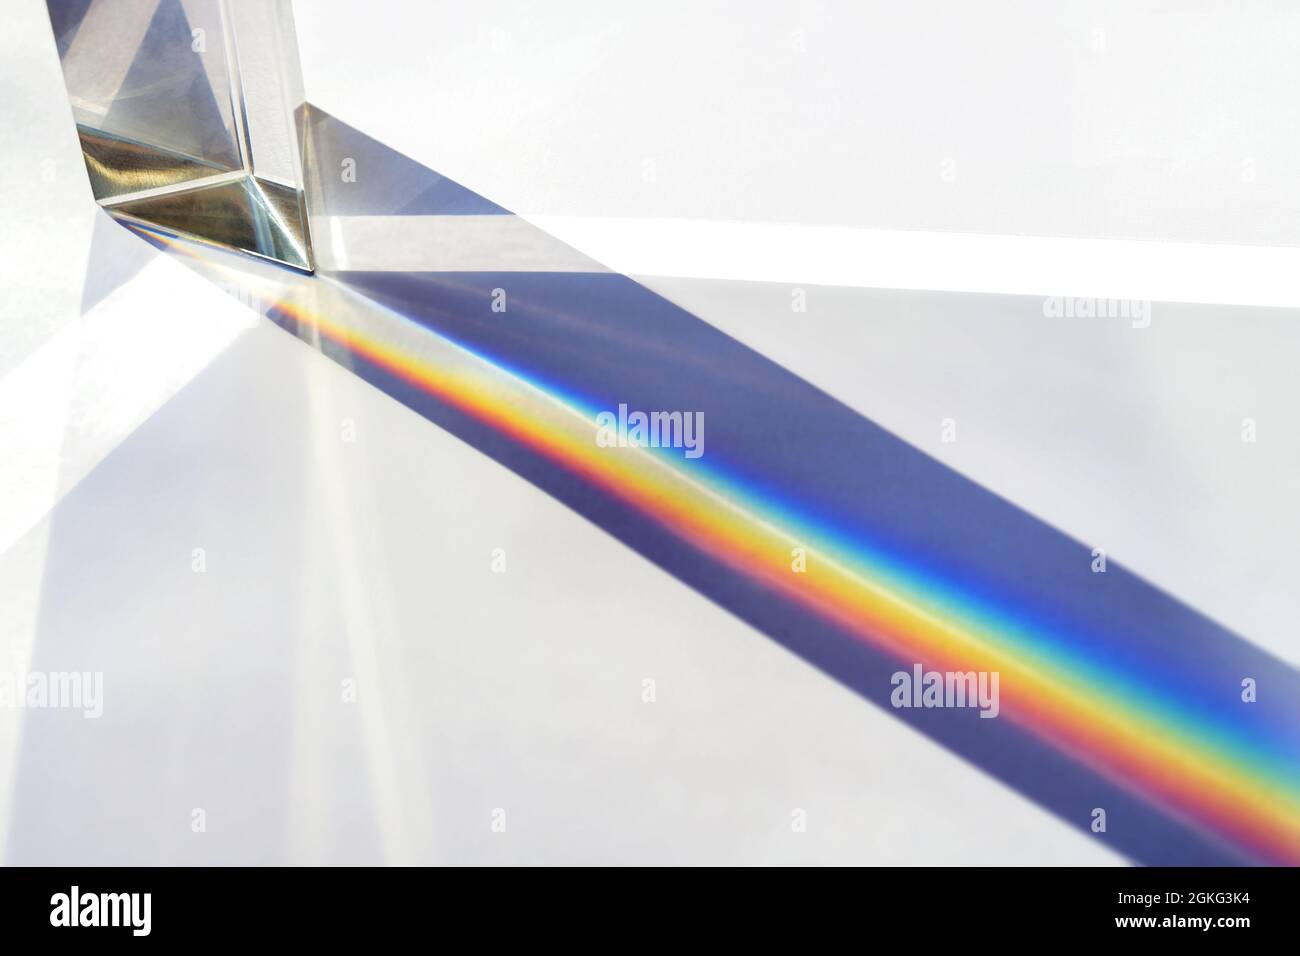 Prisma di vetro per esperimenti di fisica ottica in educazione, dividendo la luce in fasci di riflessione nello spettro dei colori arcobaleno, backgrou luminoso Foto Stock